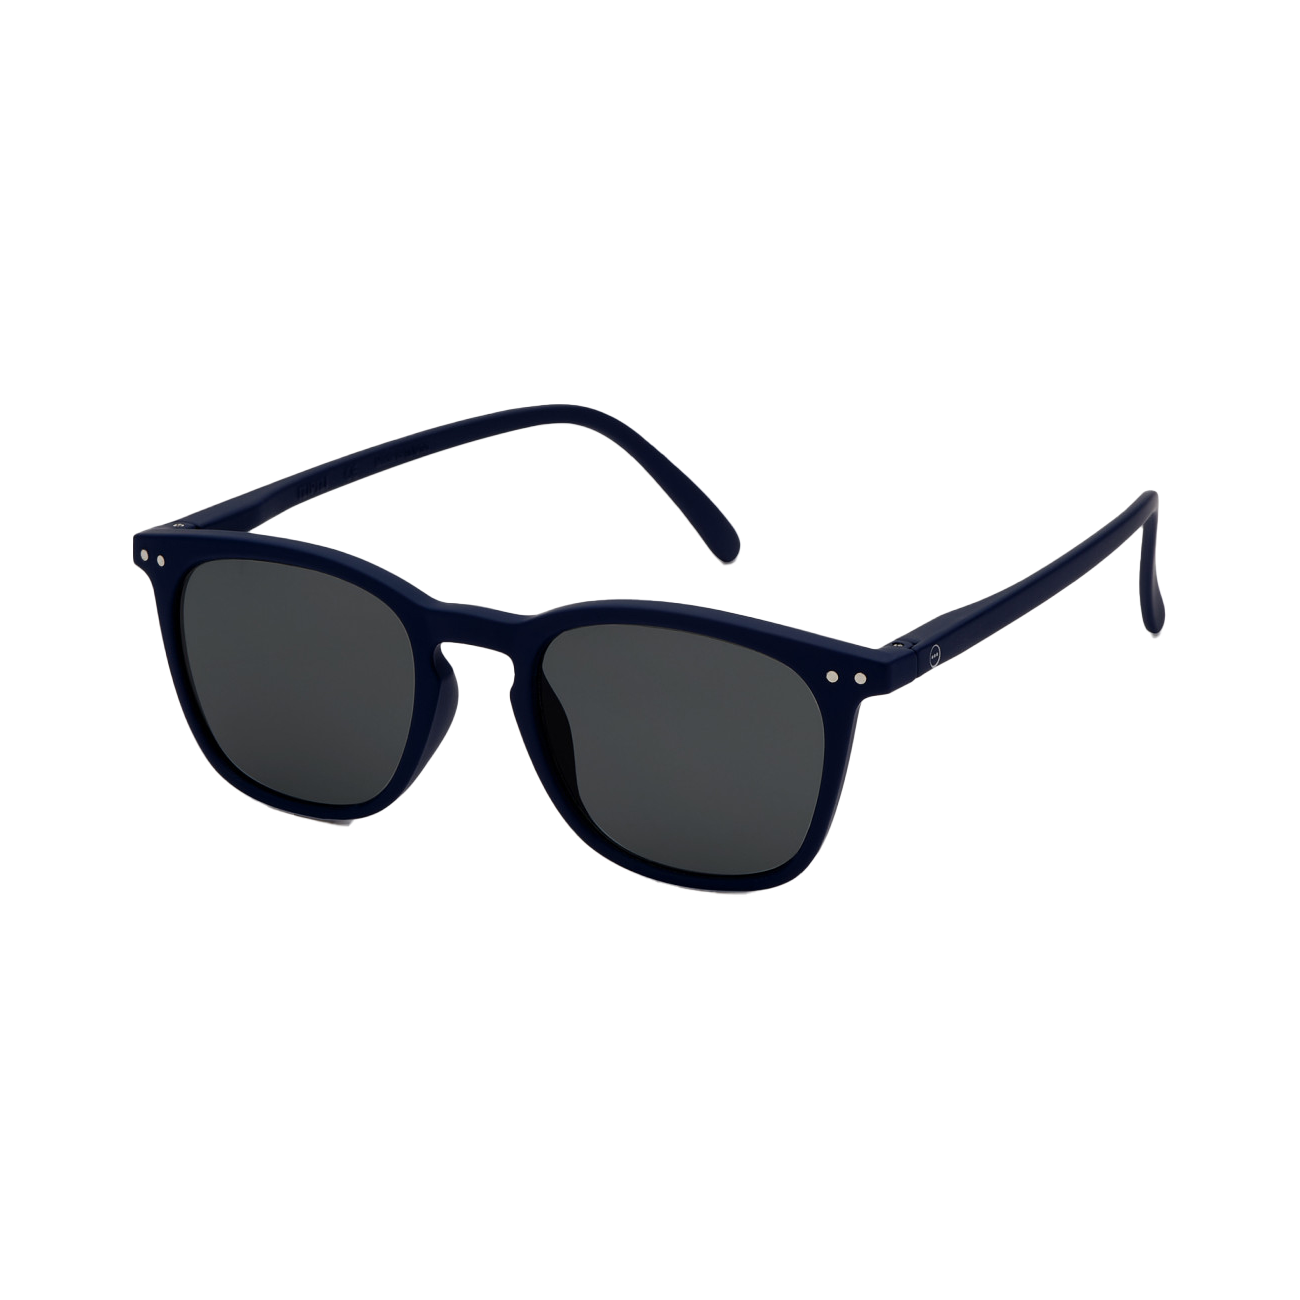 Sunglasses #E - Navy Blue